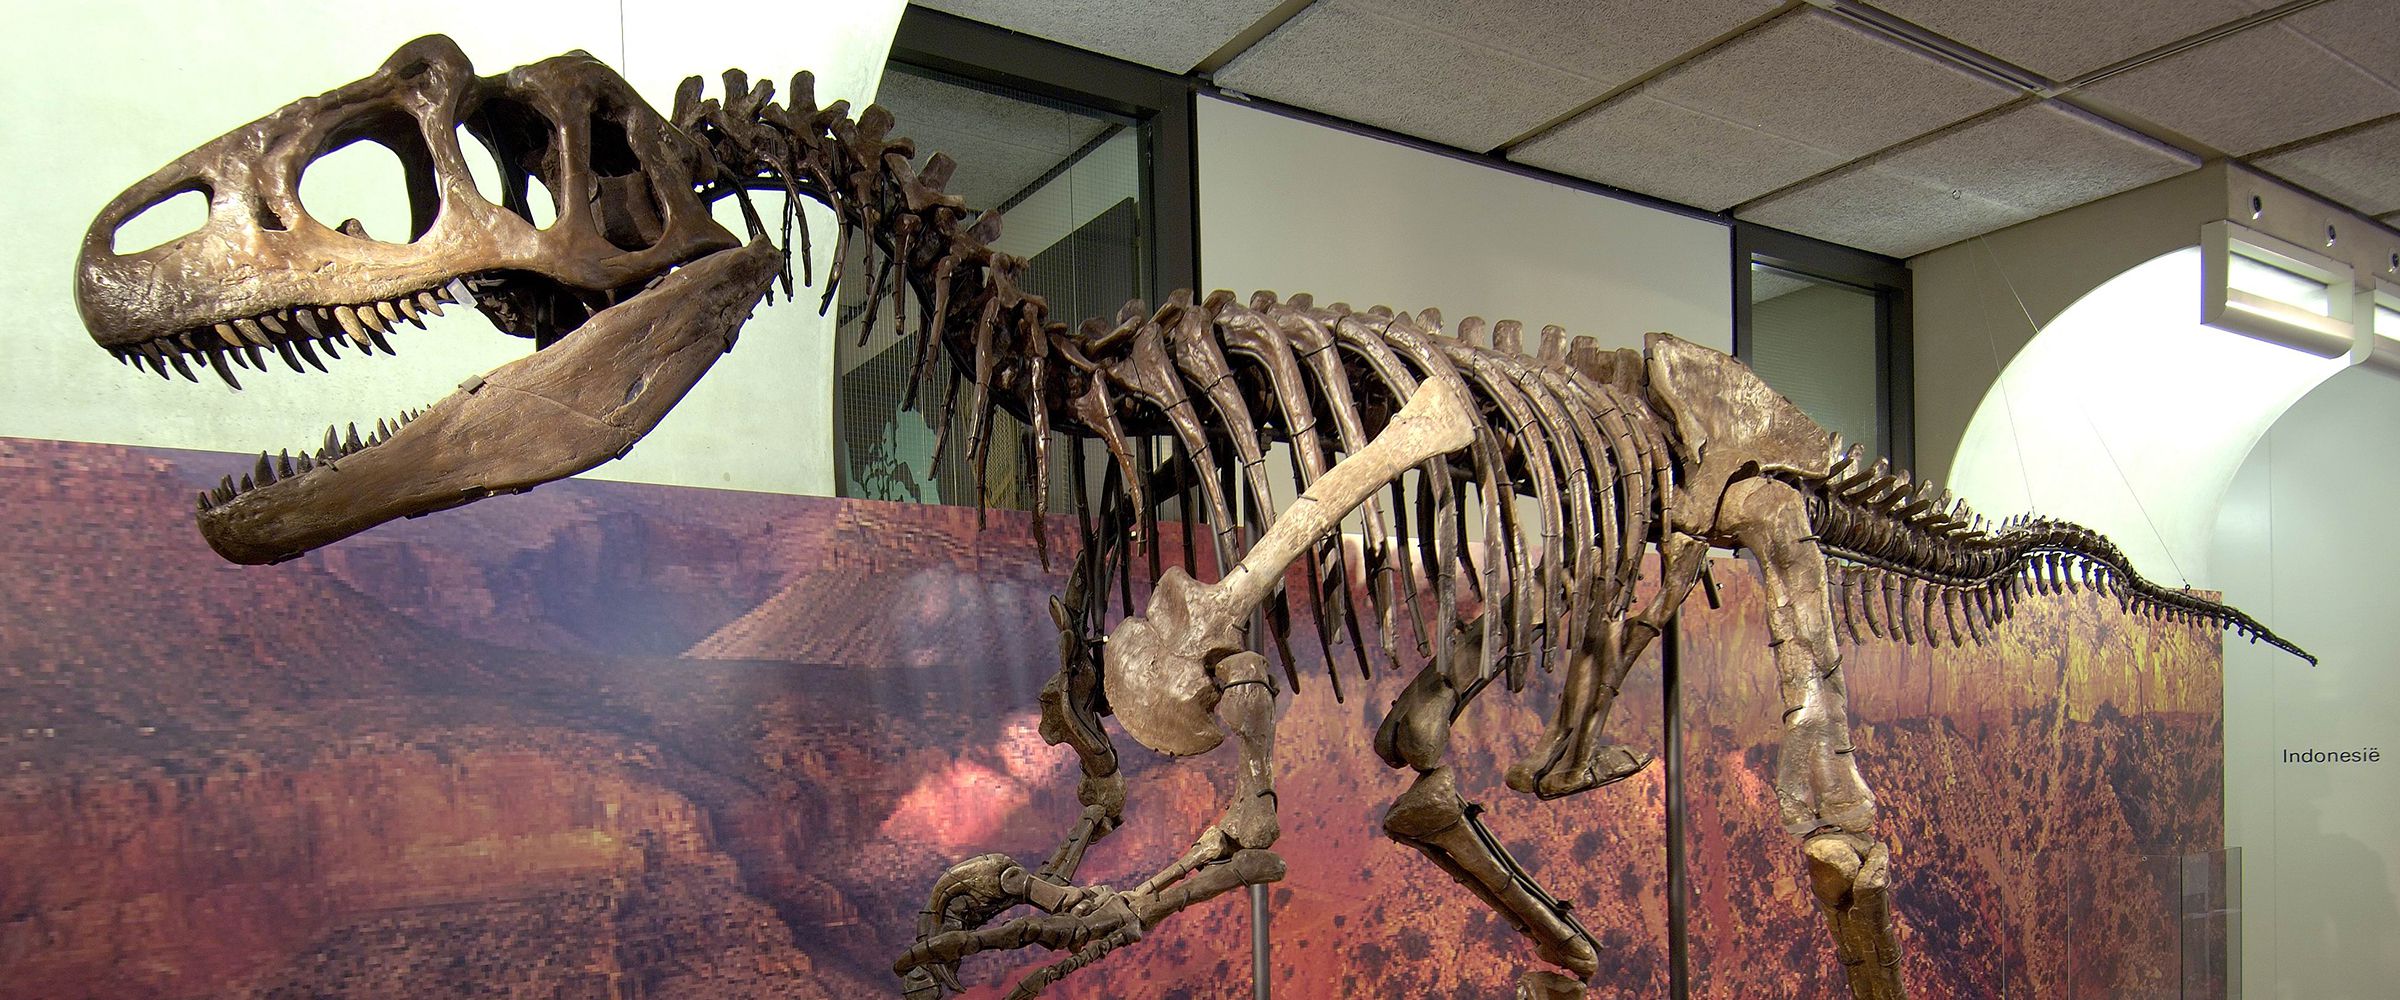 Het Allosaurusfossiel in een vroegere opstelling